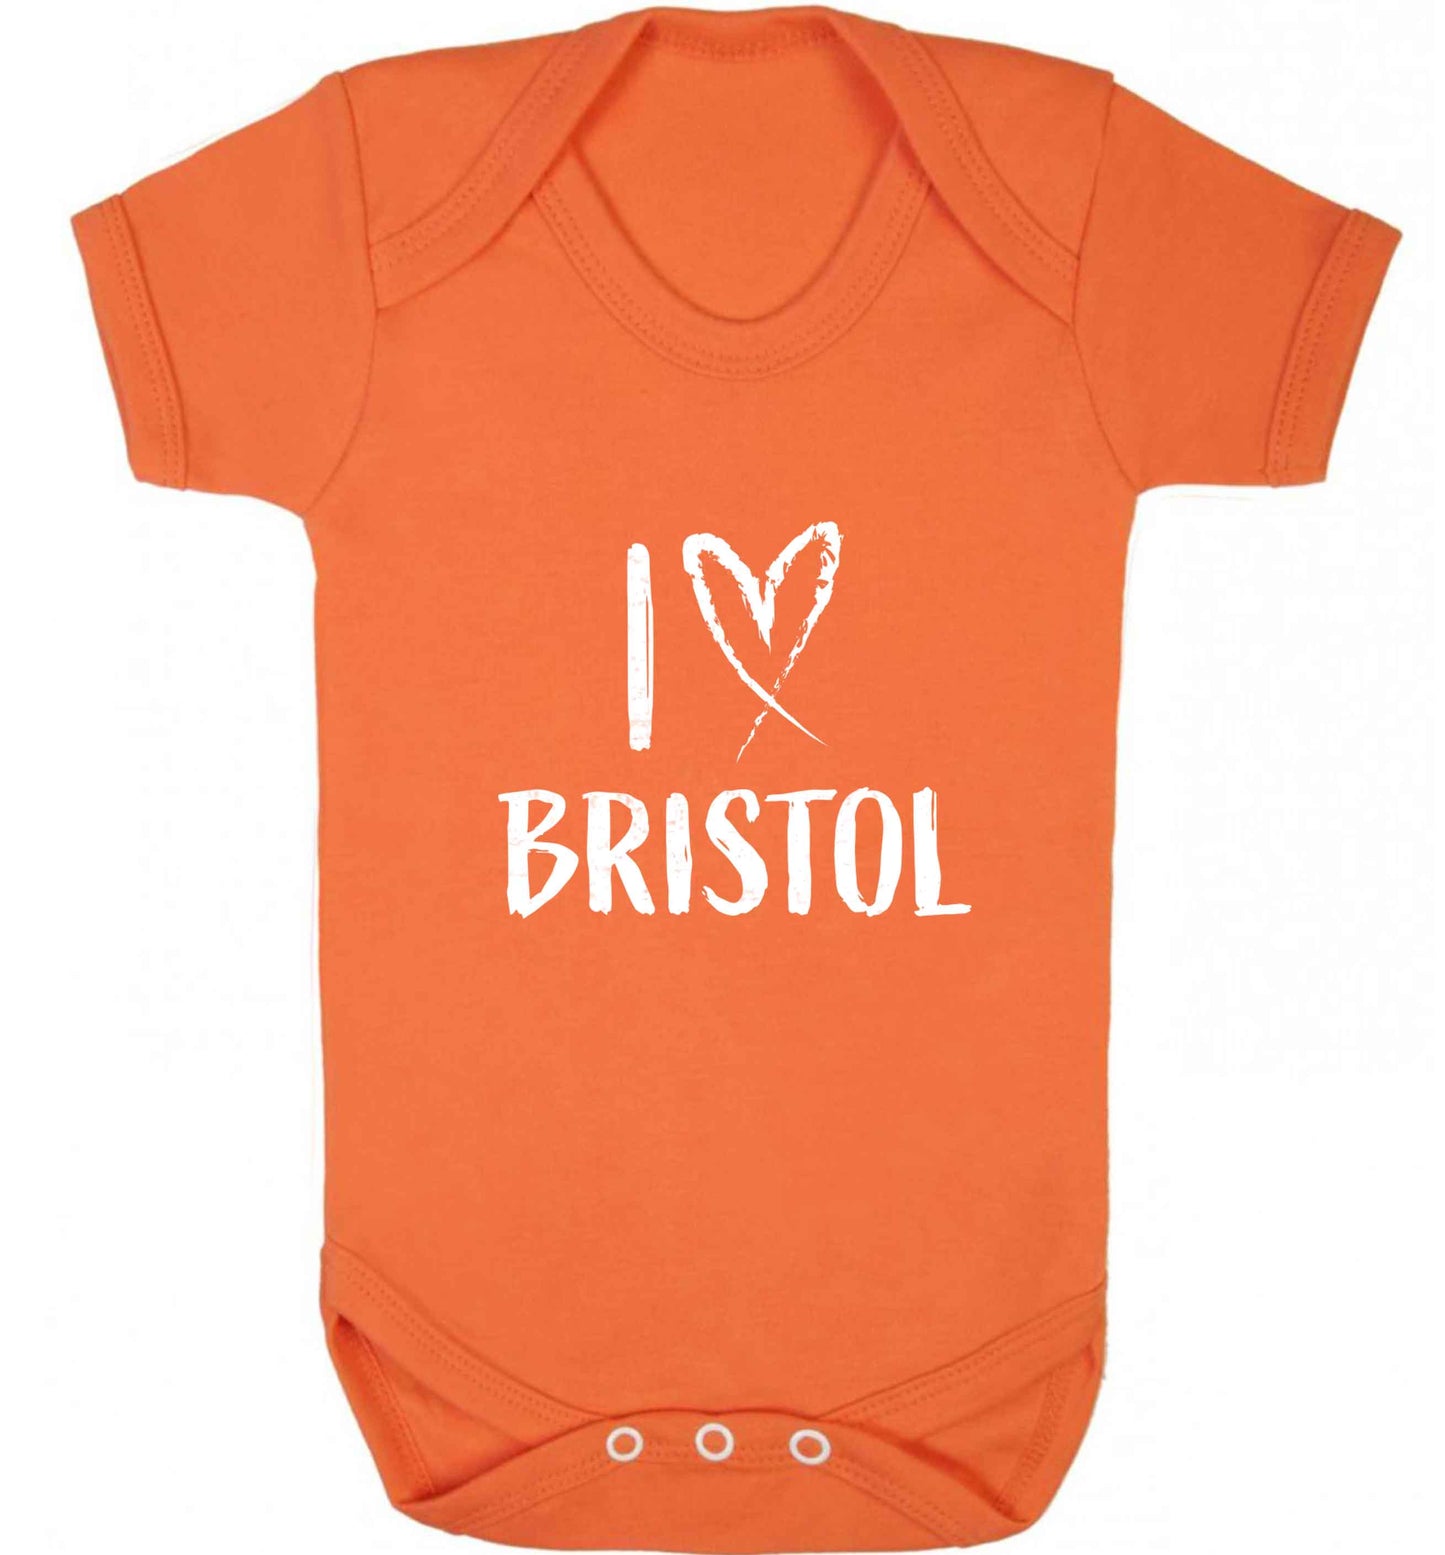 I love Bristol baby vest orange 18-24 months